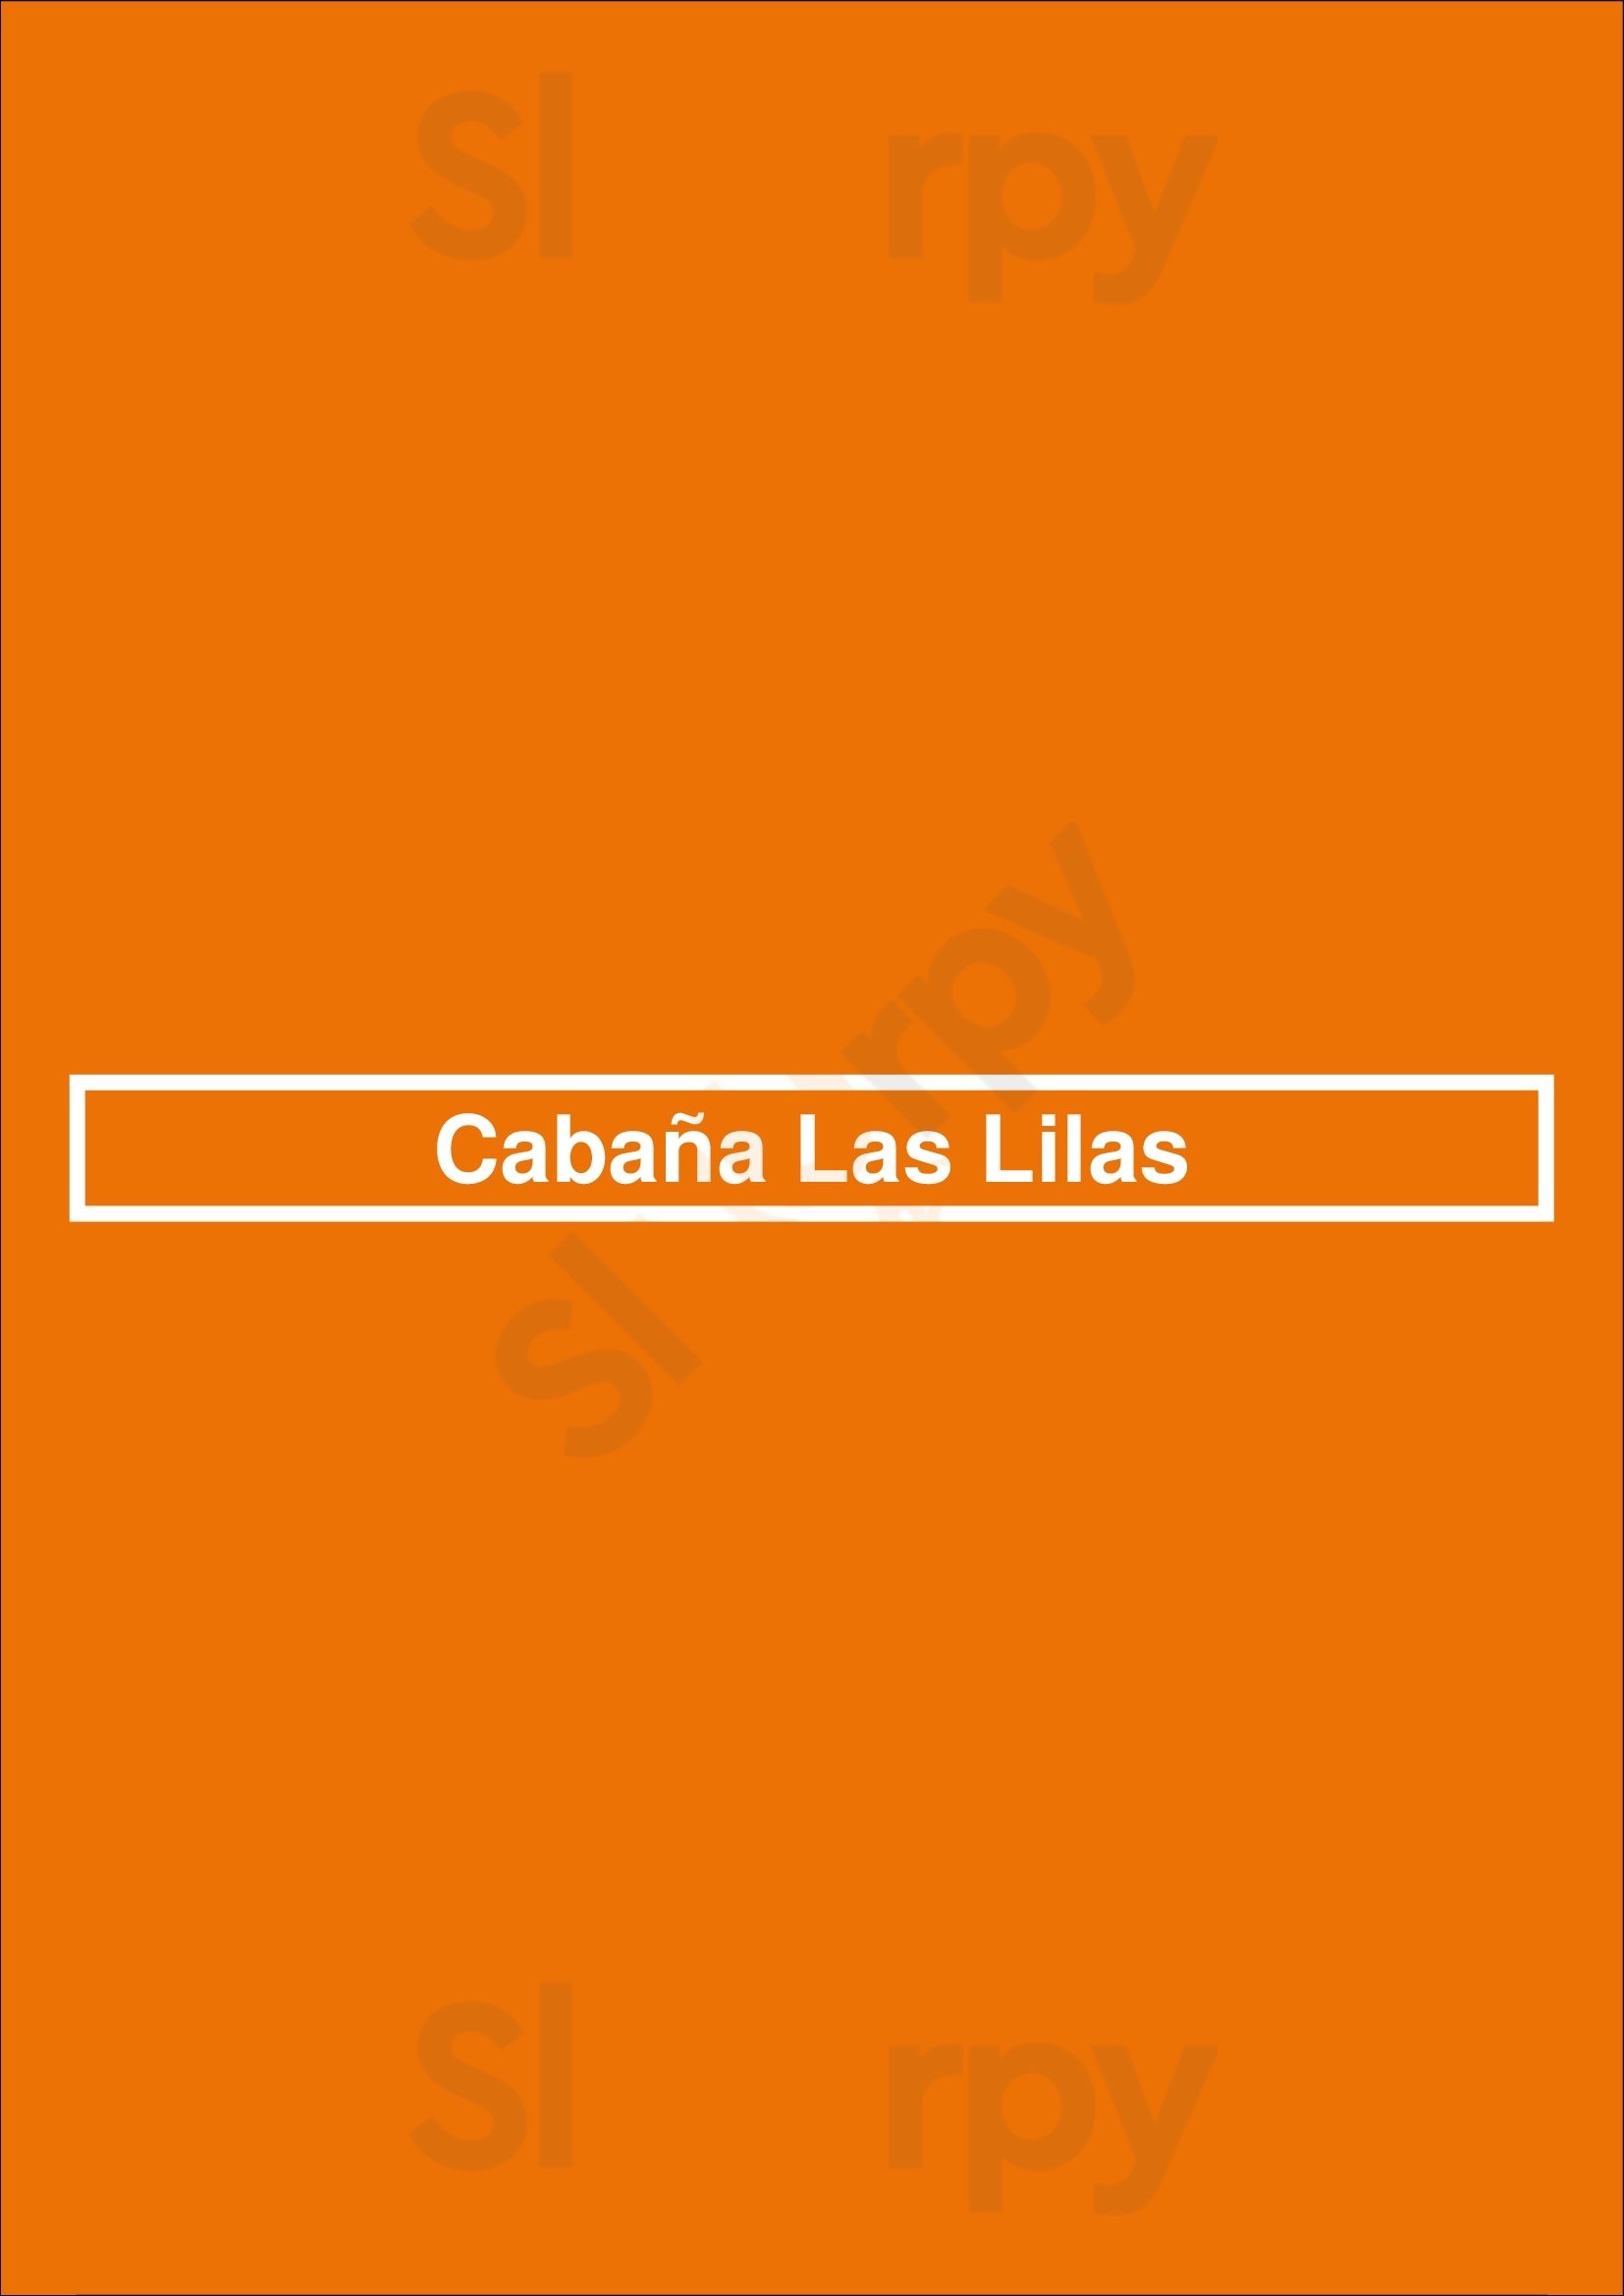 Cabaña Las Lilas Buenos Aires Menu - 1